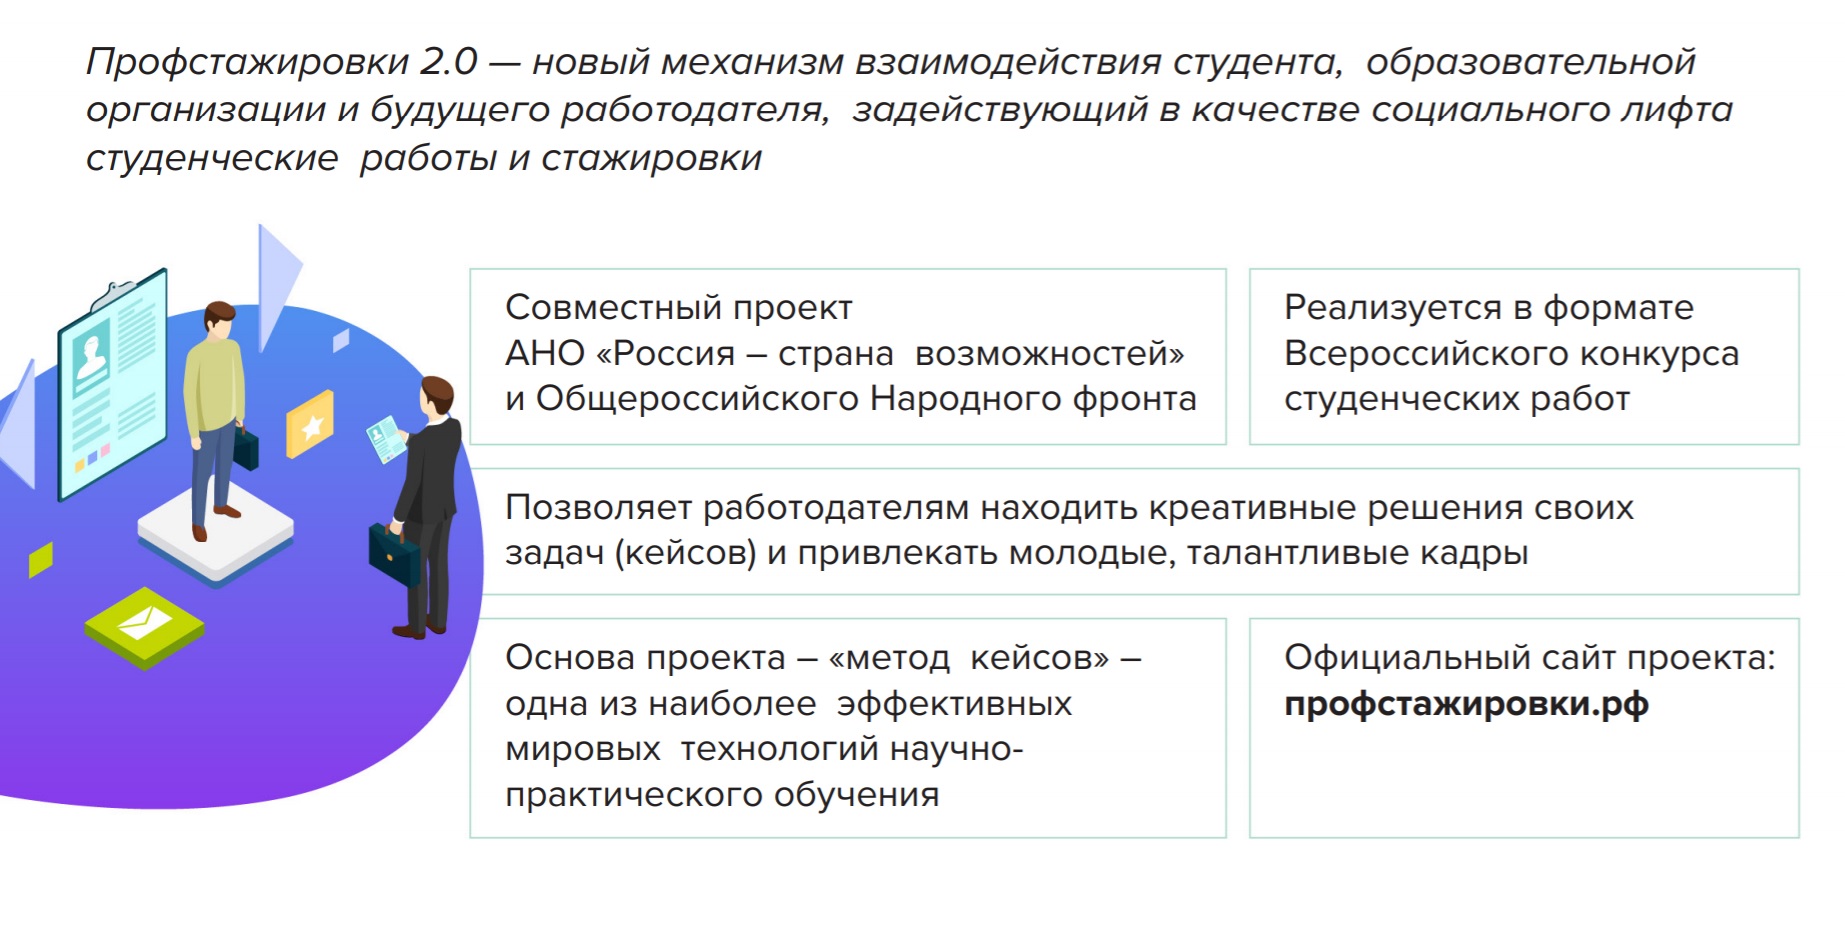 Проект Профстажировки.ру приглашает студентов принять участие в конкурсе кейсов. 